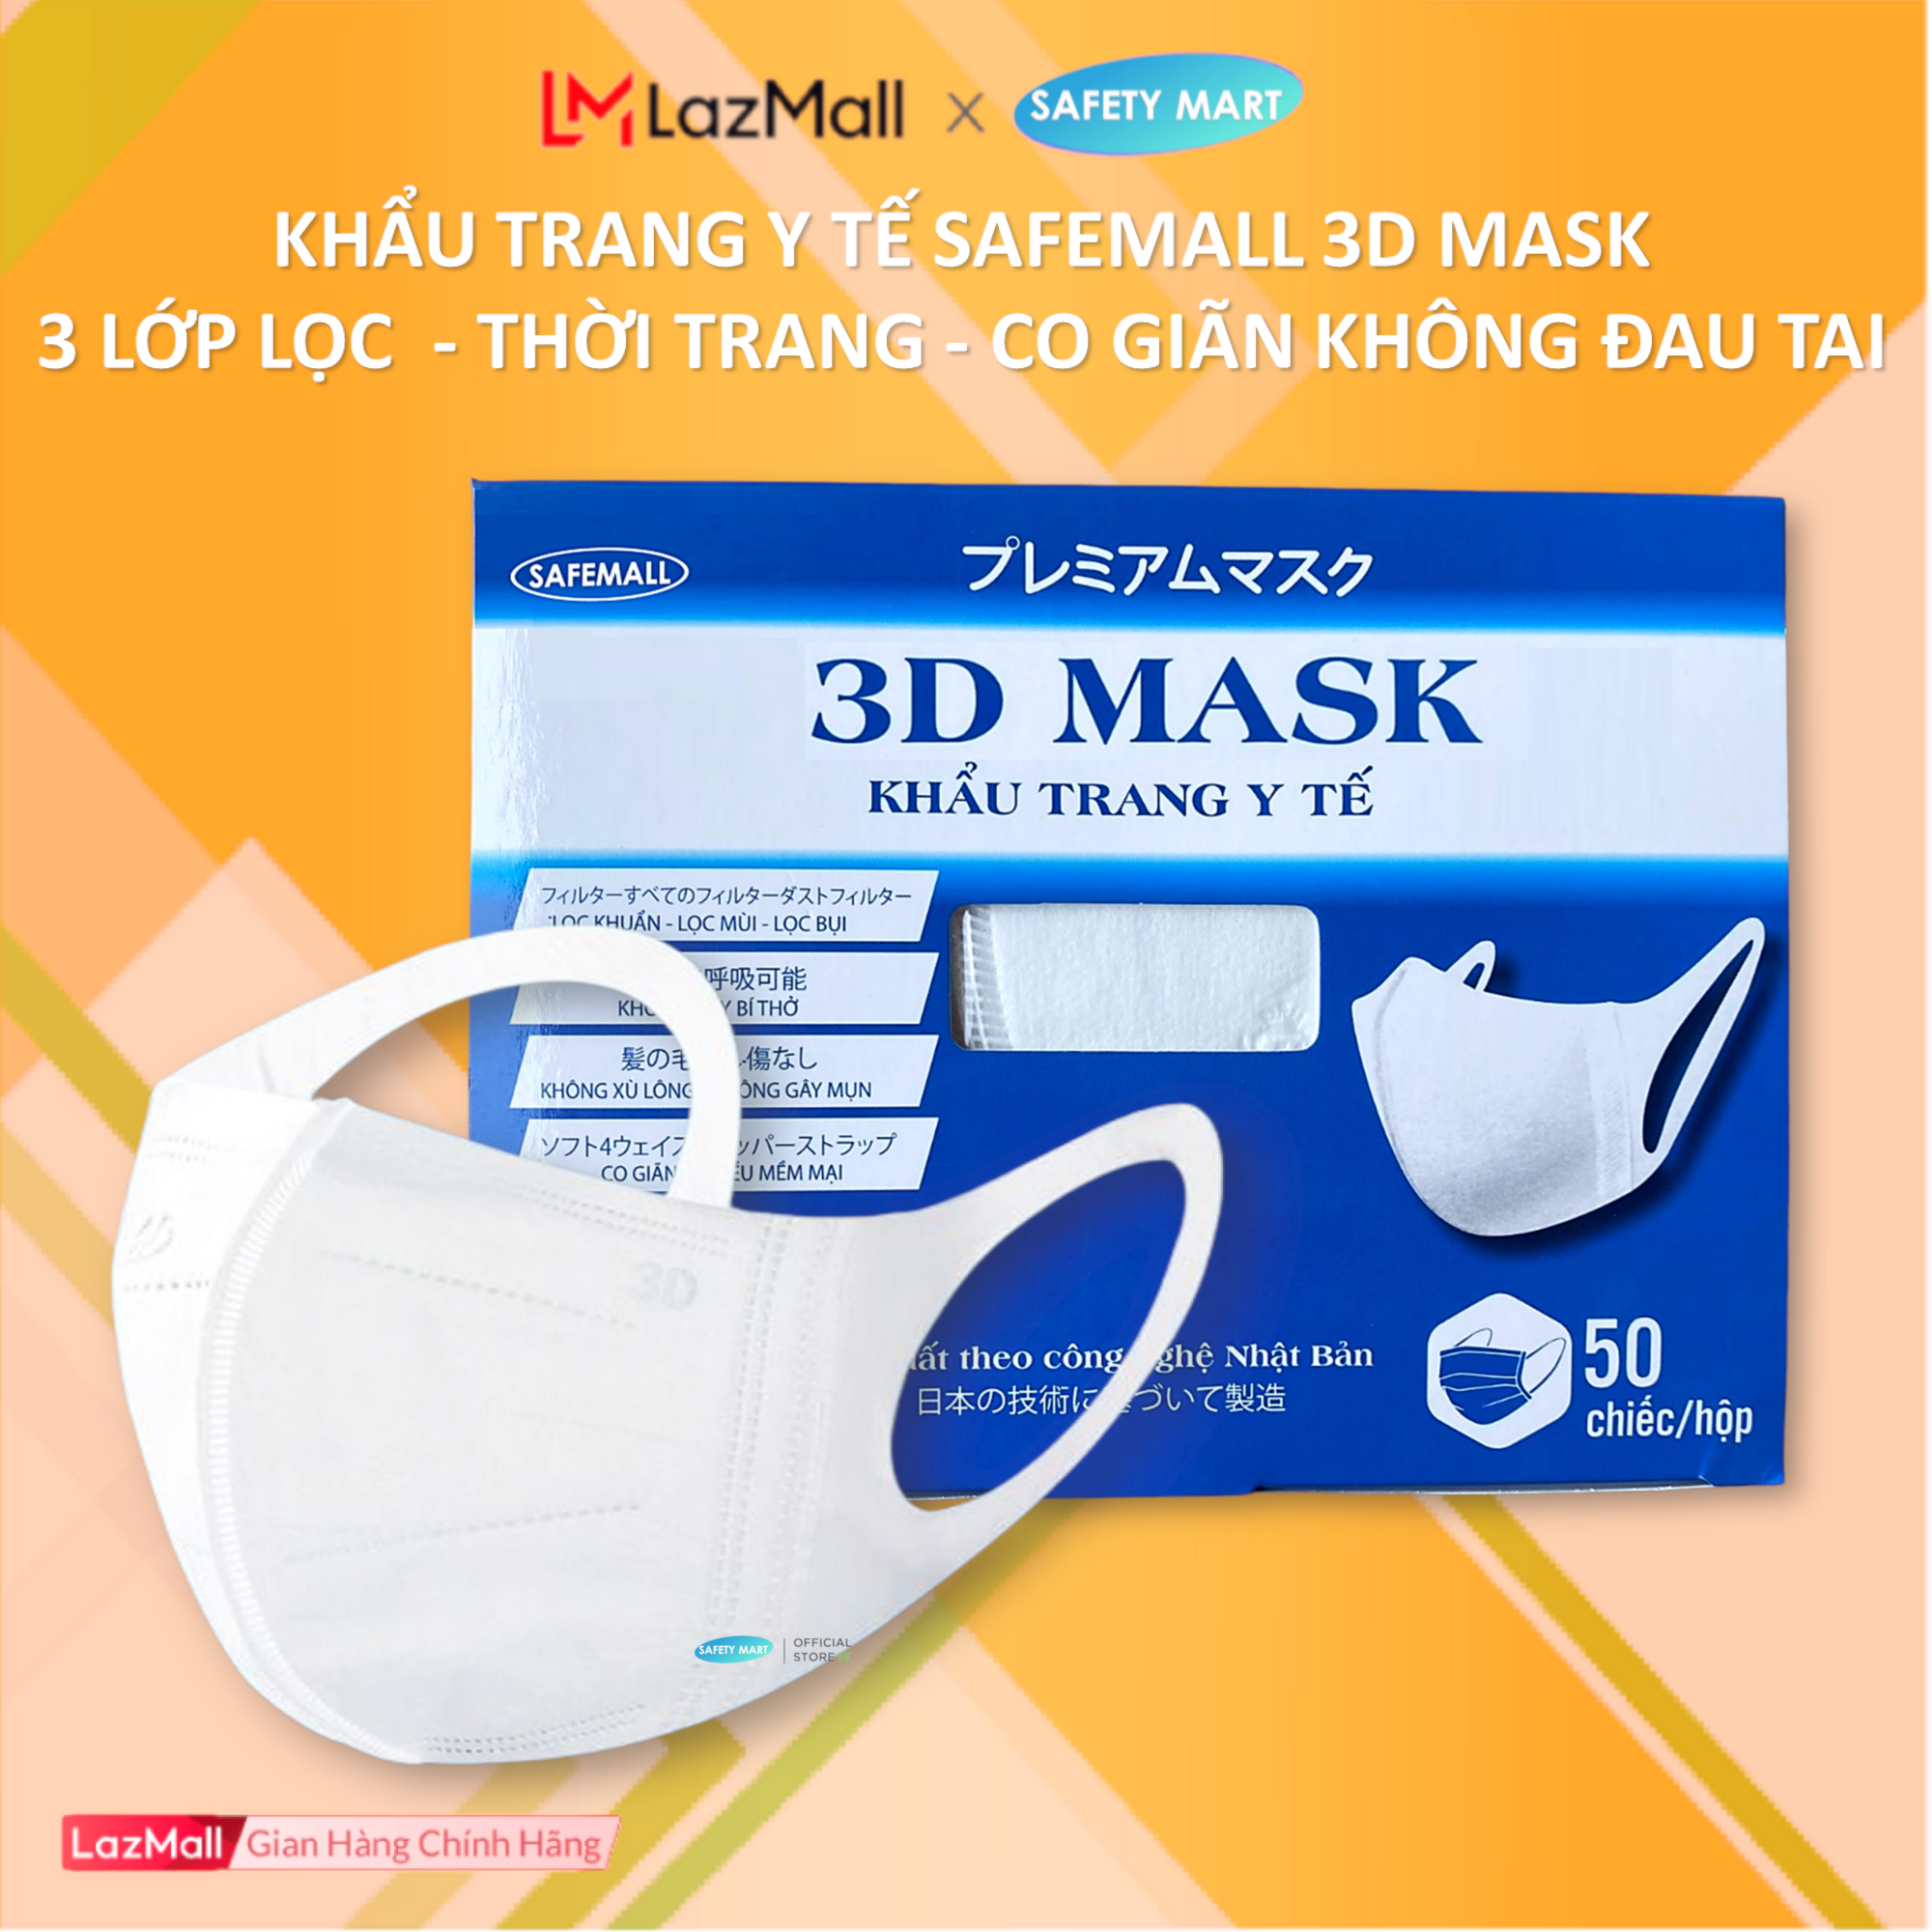 [HOT] Hộp 50 chiếc Khẩu trang y tế 3D Mask màu trắng thời trang SafeMall, Khẩu trang 3 lớp kháng khuẩn công nghệ nhật Bản Japan Technology, ngăn ngừa bụi mịn, vi khuẩn, ô nhiễm...- Hàng Chính Hãng Safety Mart Official